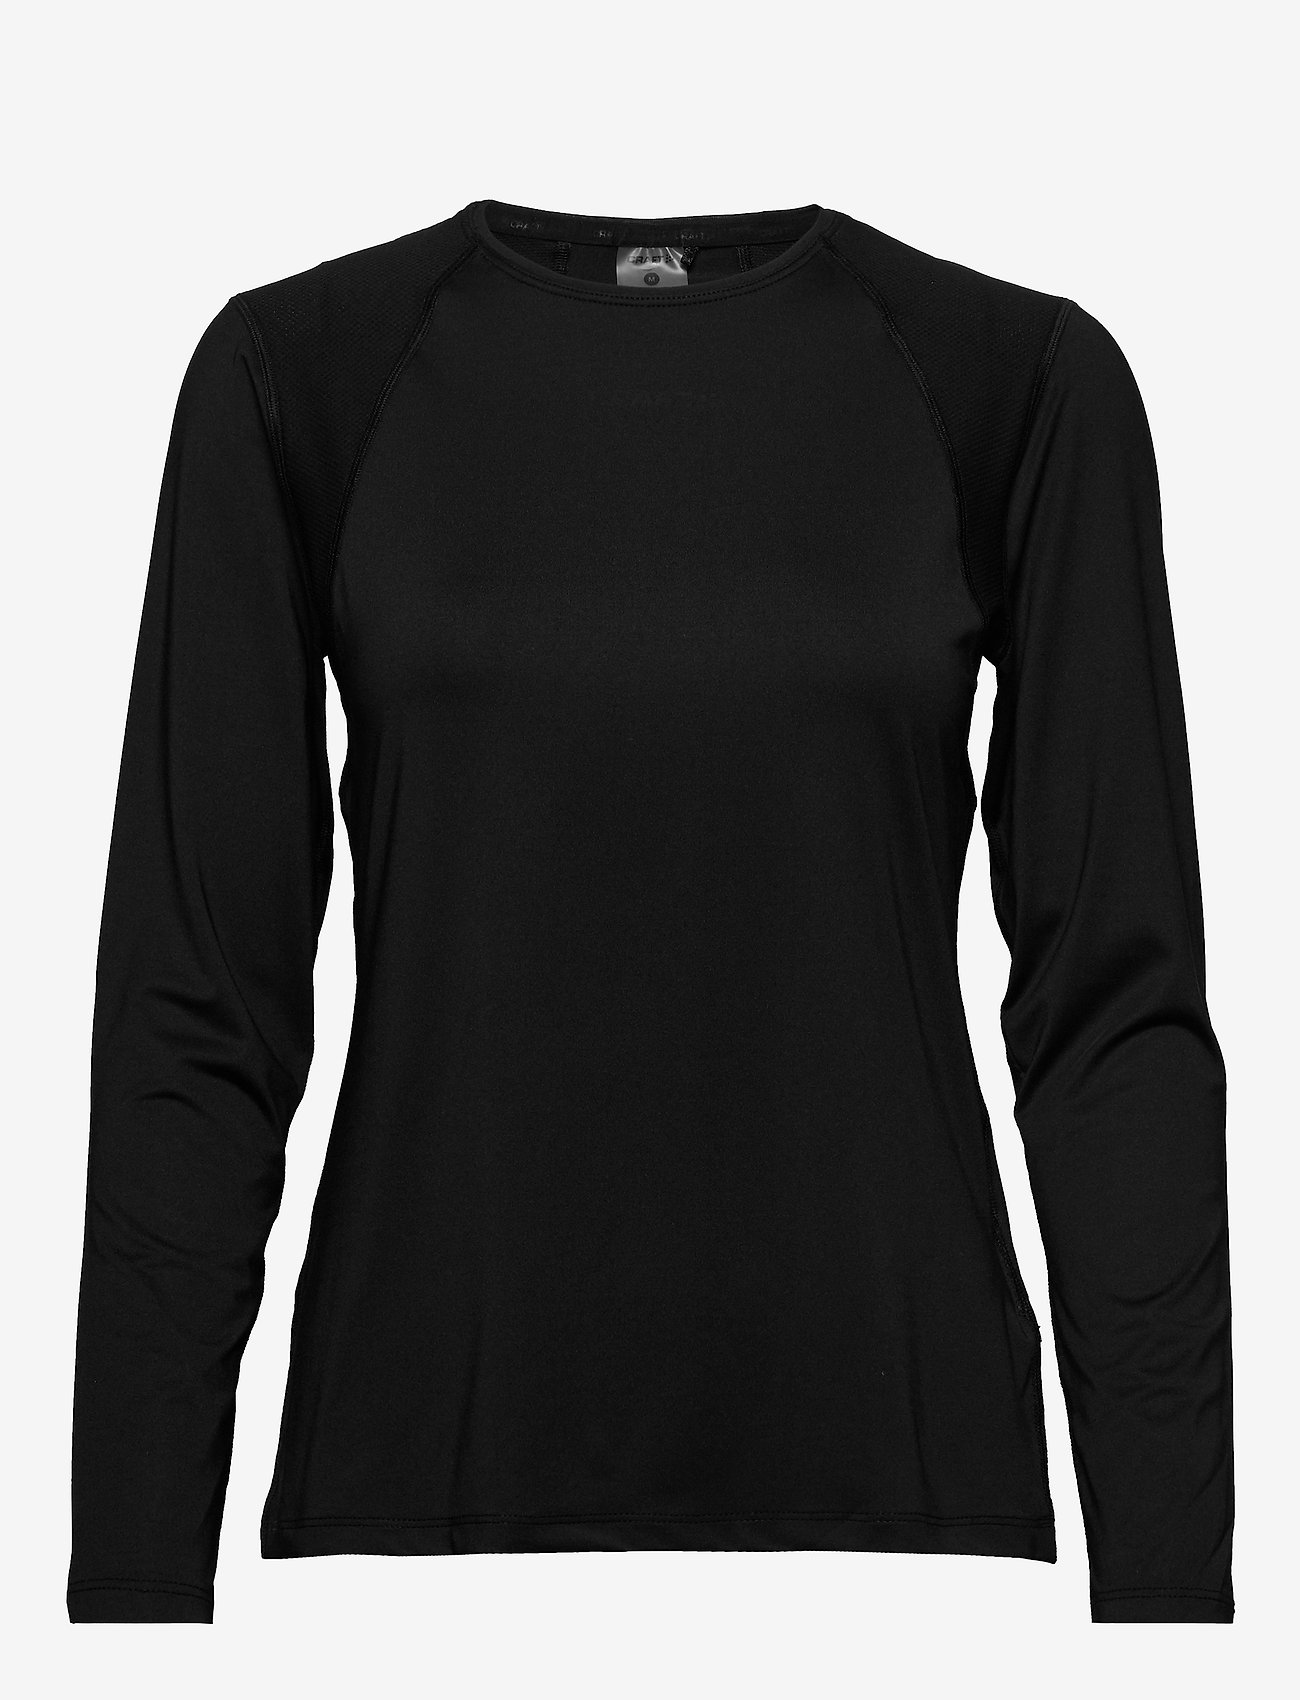 Craft - Adv Essence Ls Tee W - t-shirts & tops - black - 0